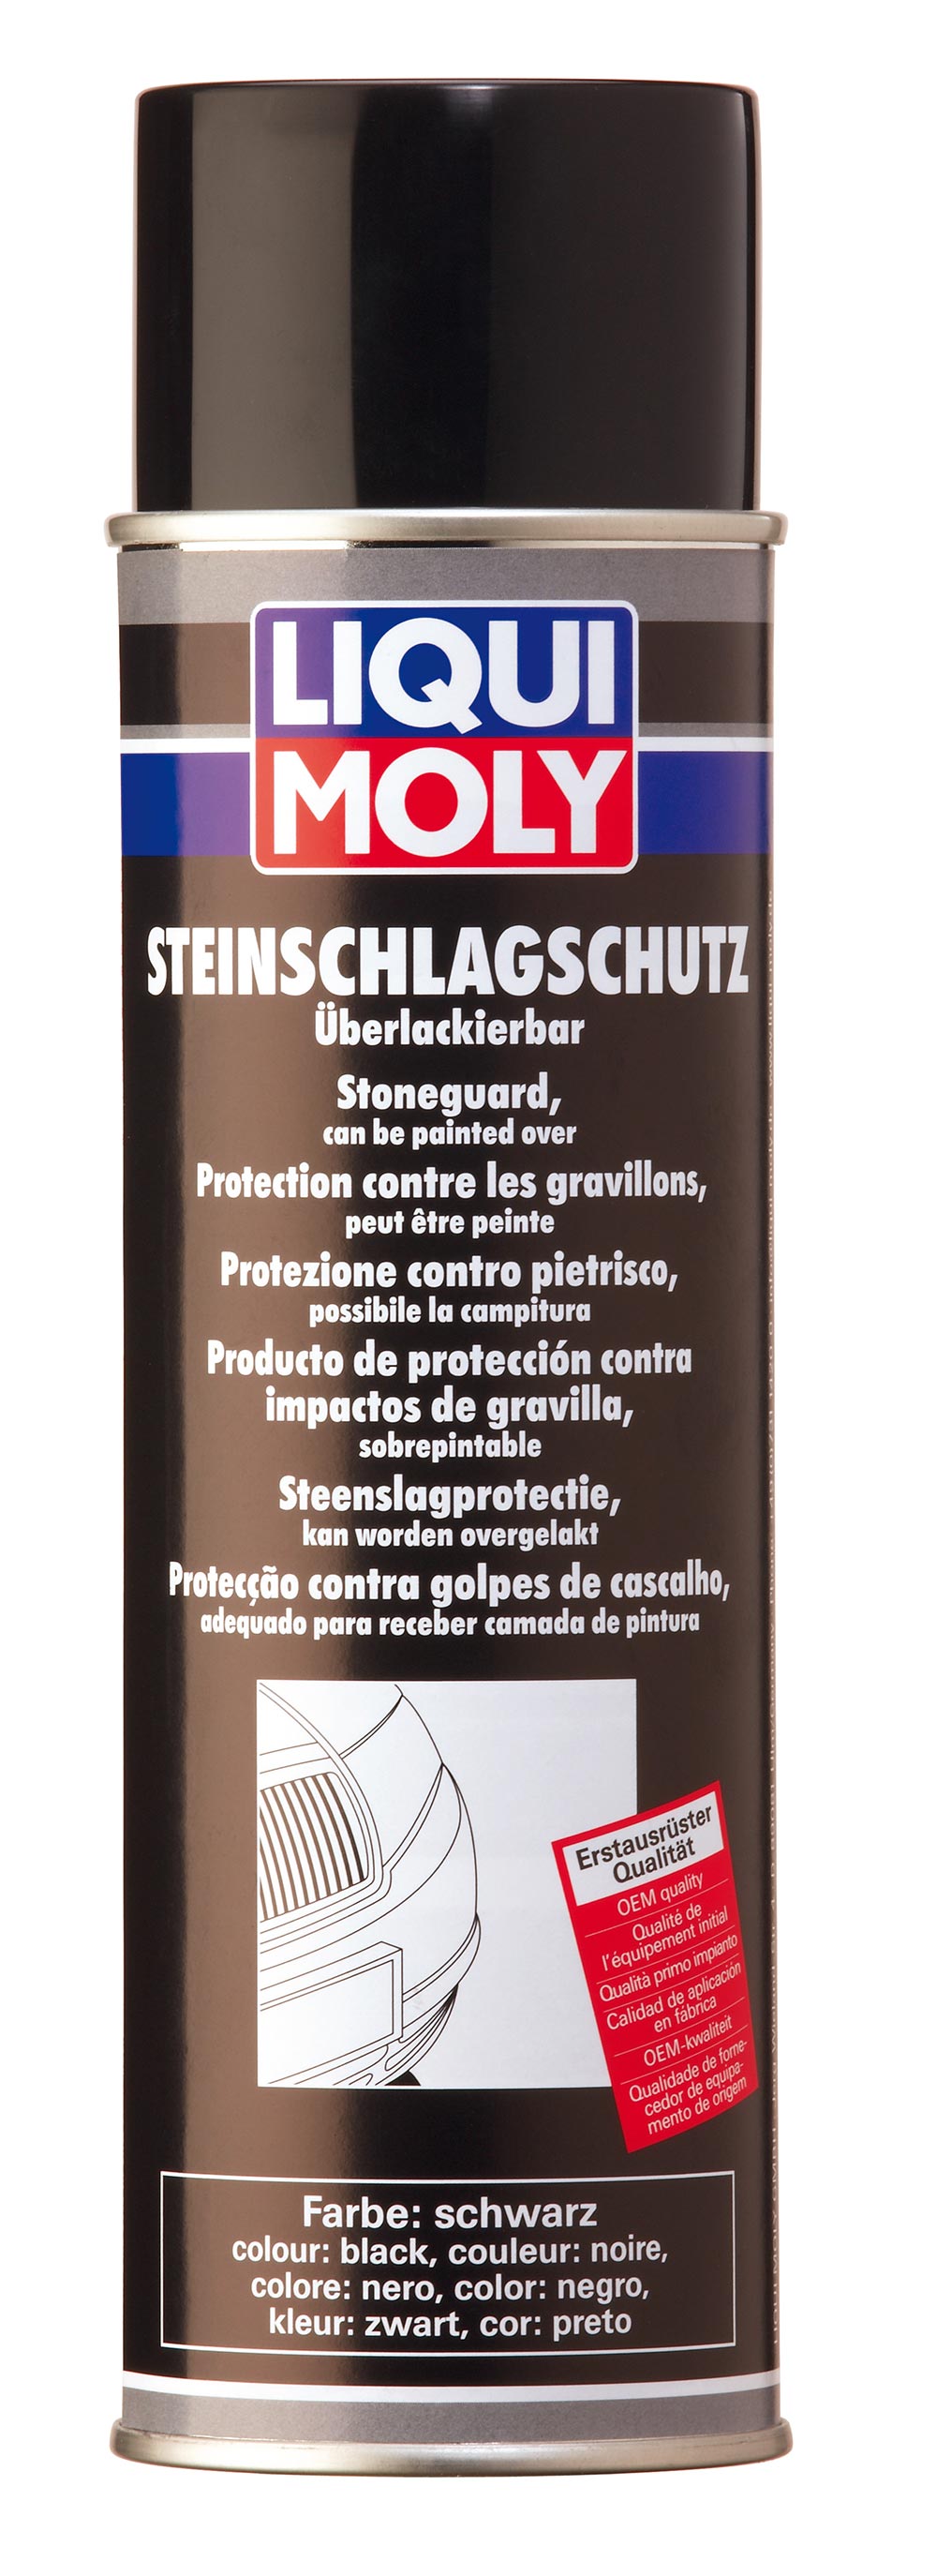 Антигравий черный Steinschlag-Schutz schwarz 0.500мл